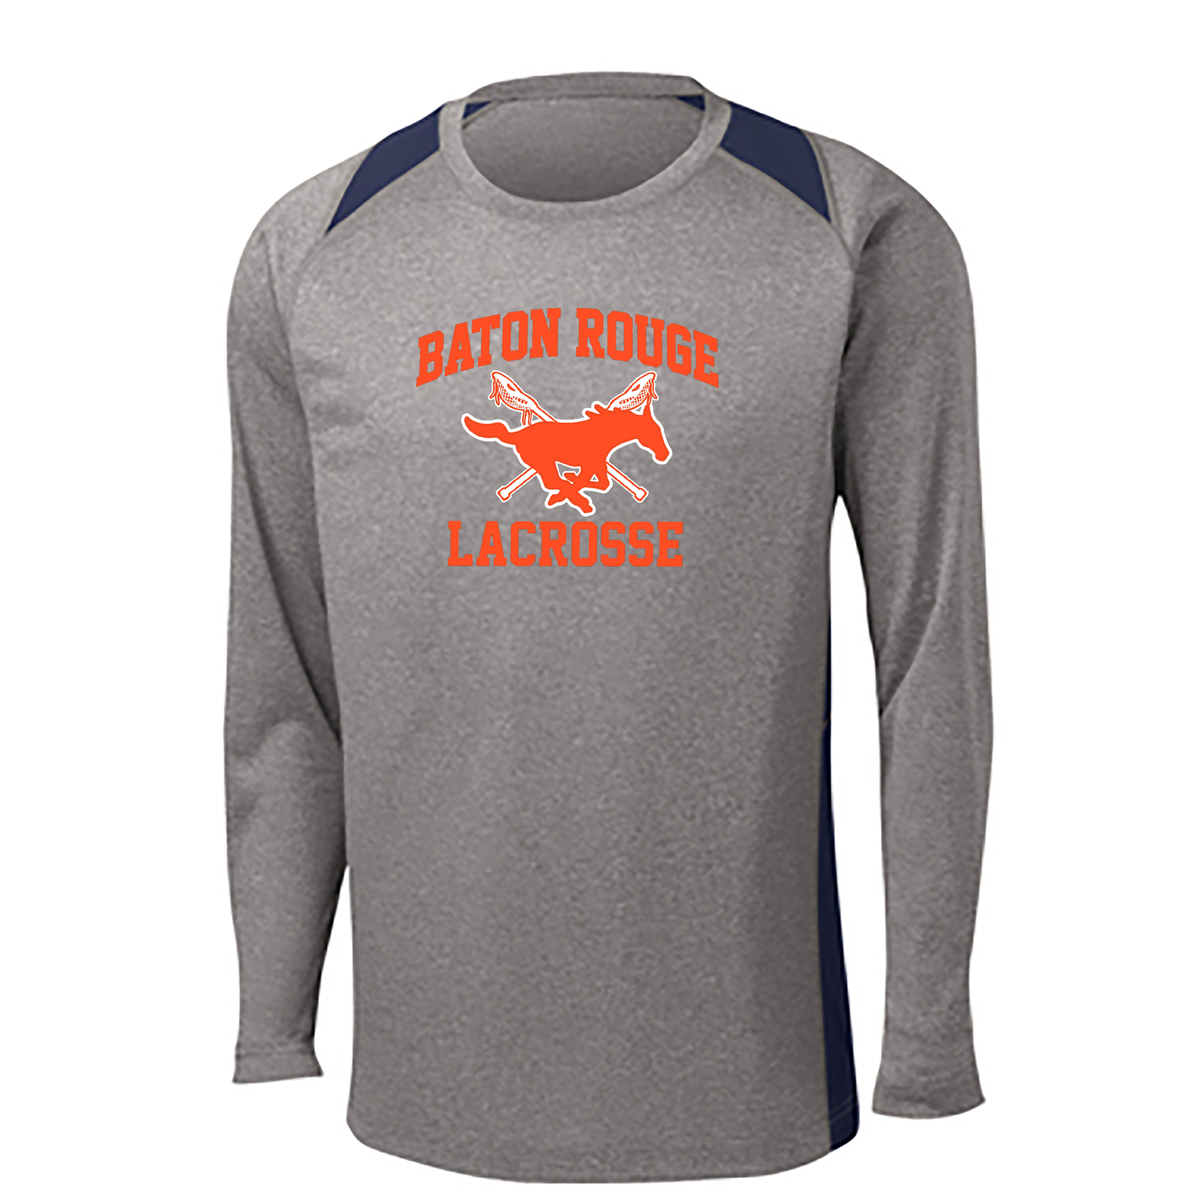 Baton Rouge Mustangs Lacrosse Long Sleeve Colorblock Contender Tee